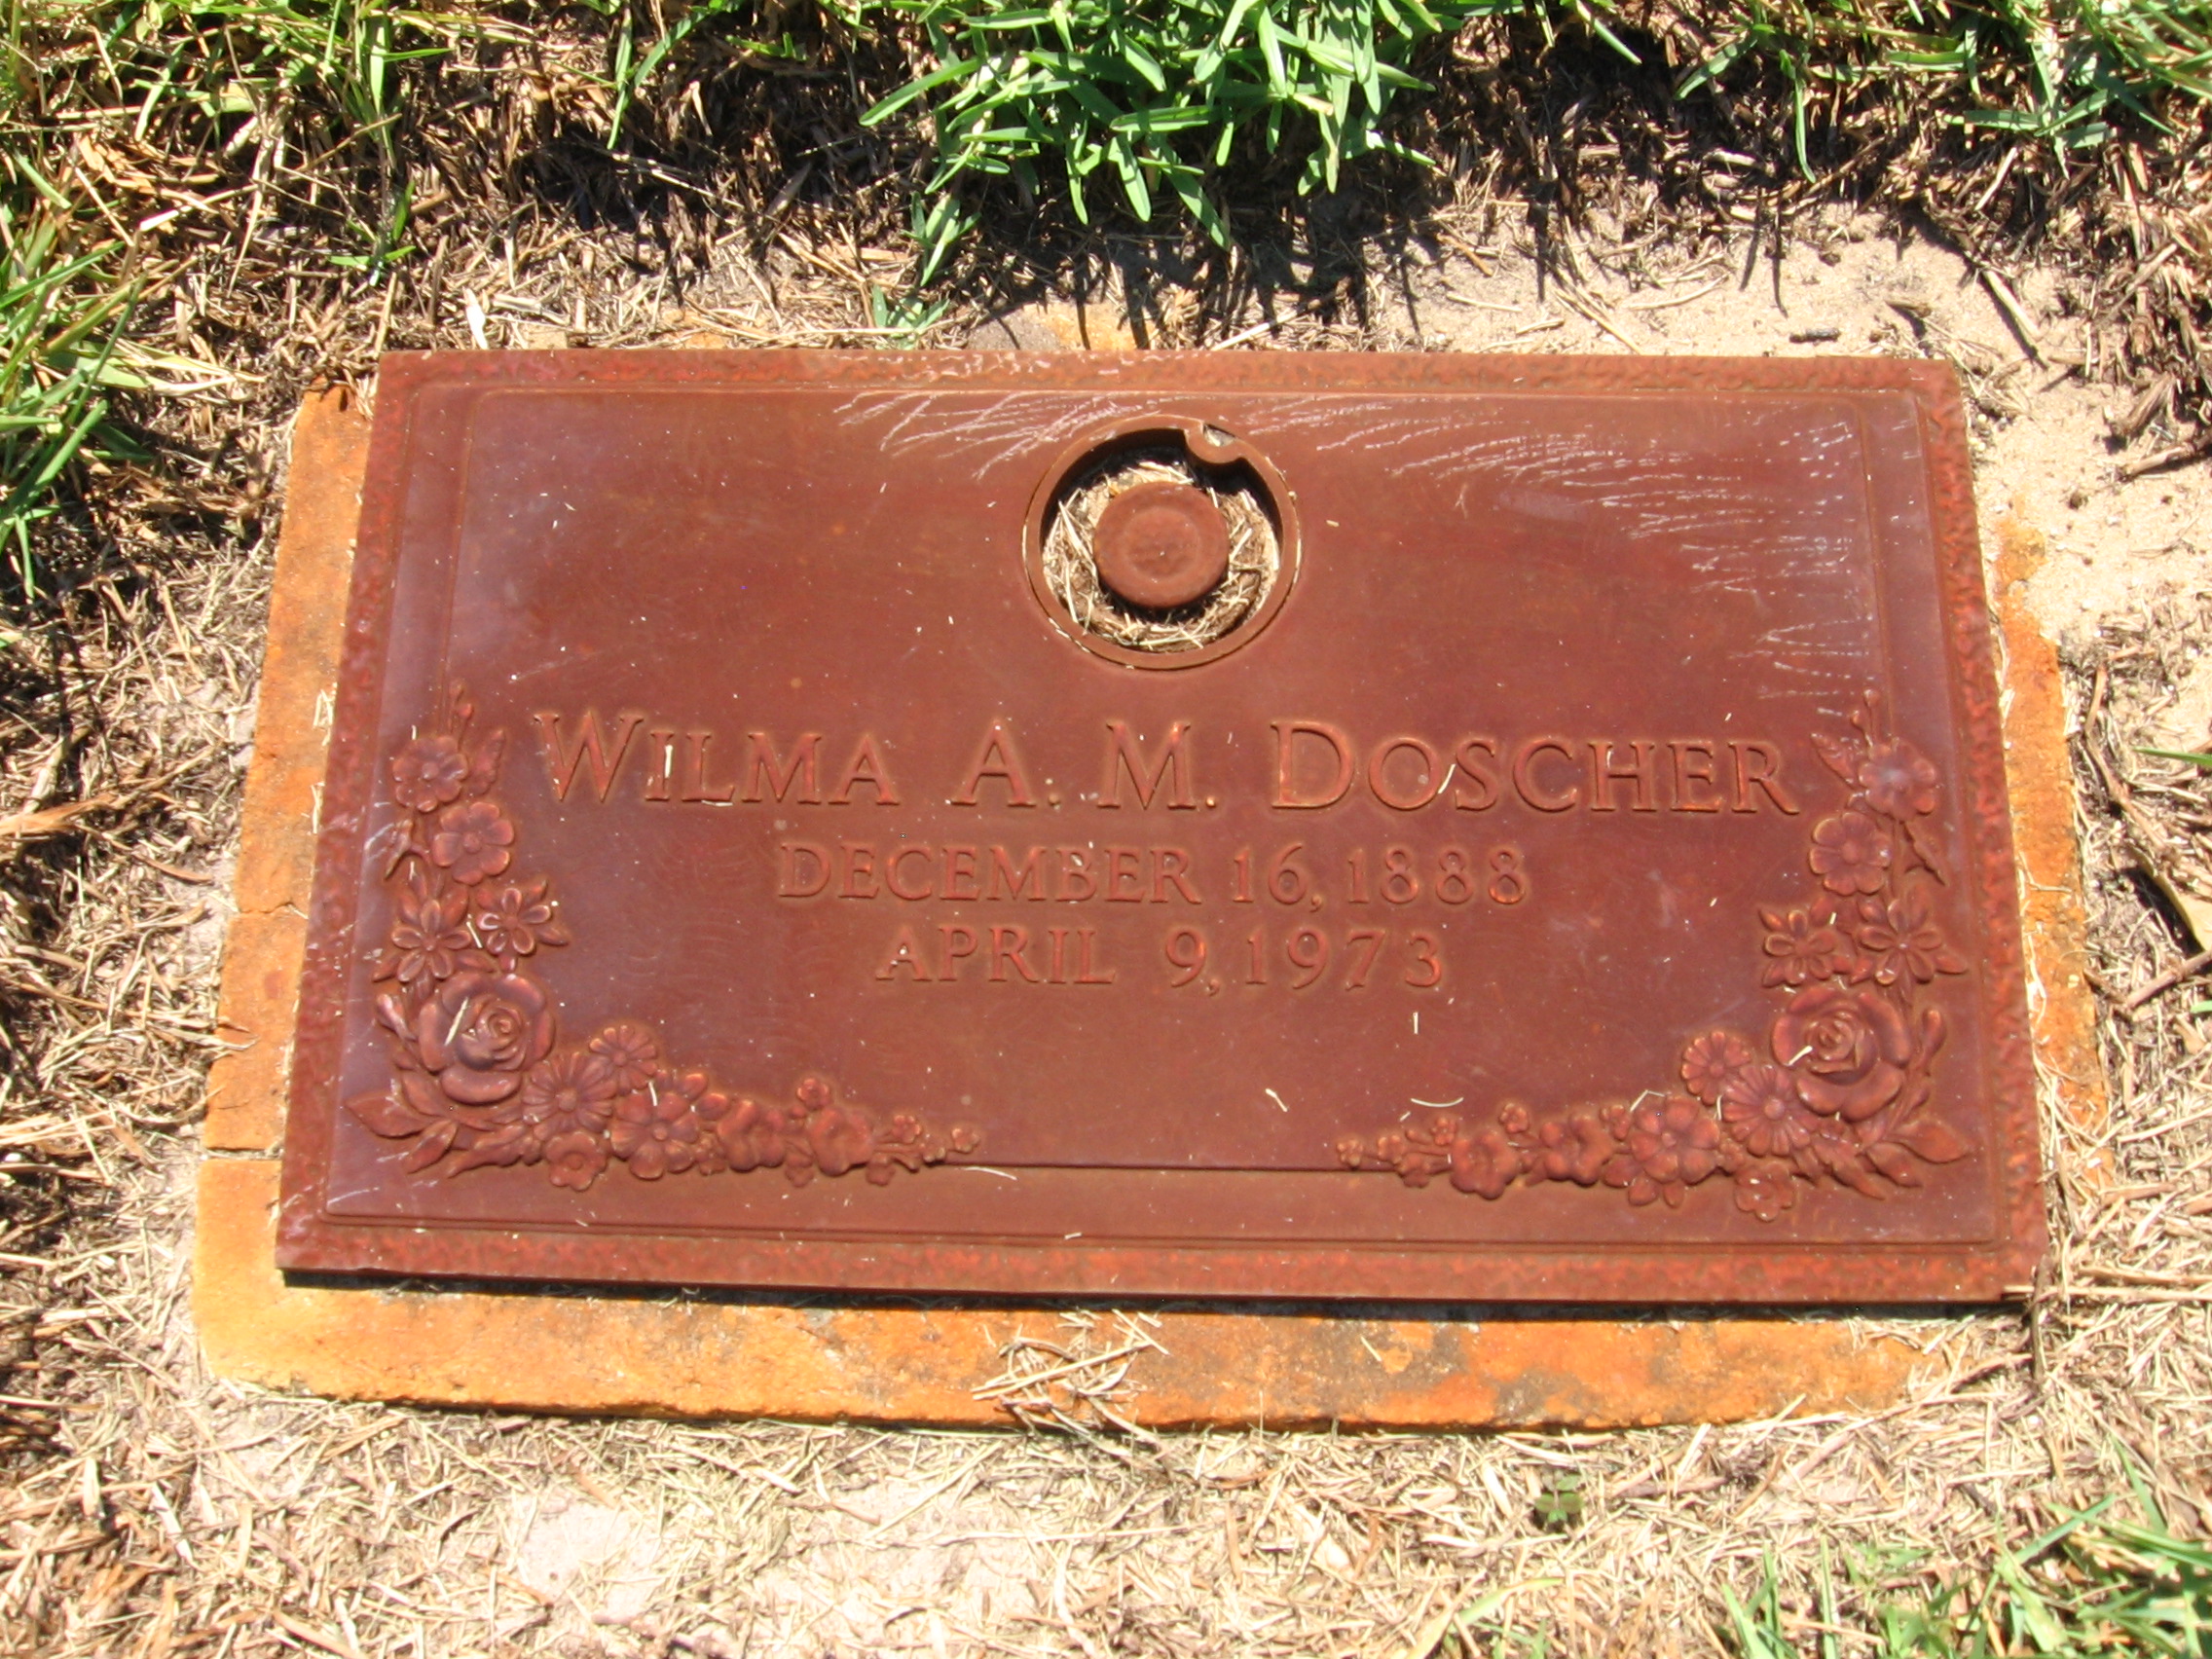 Wilma A M Doscher